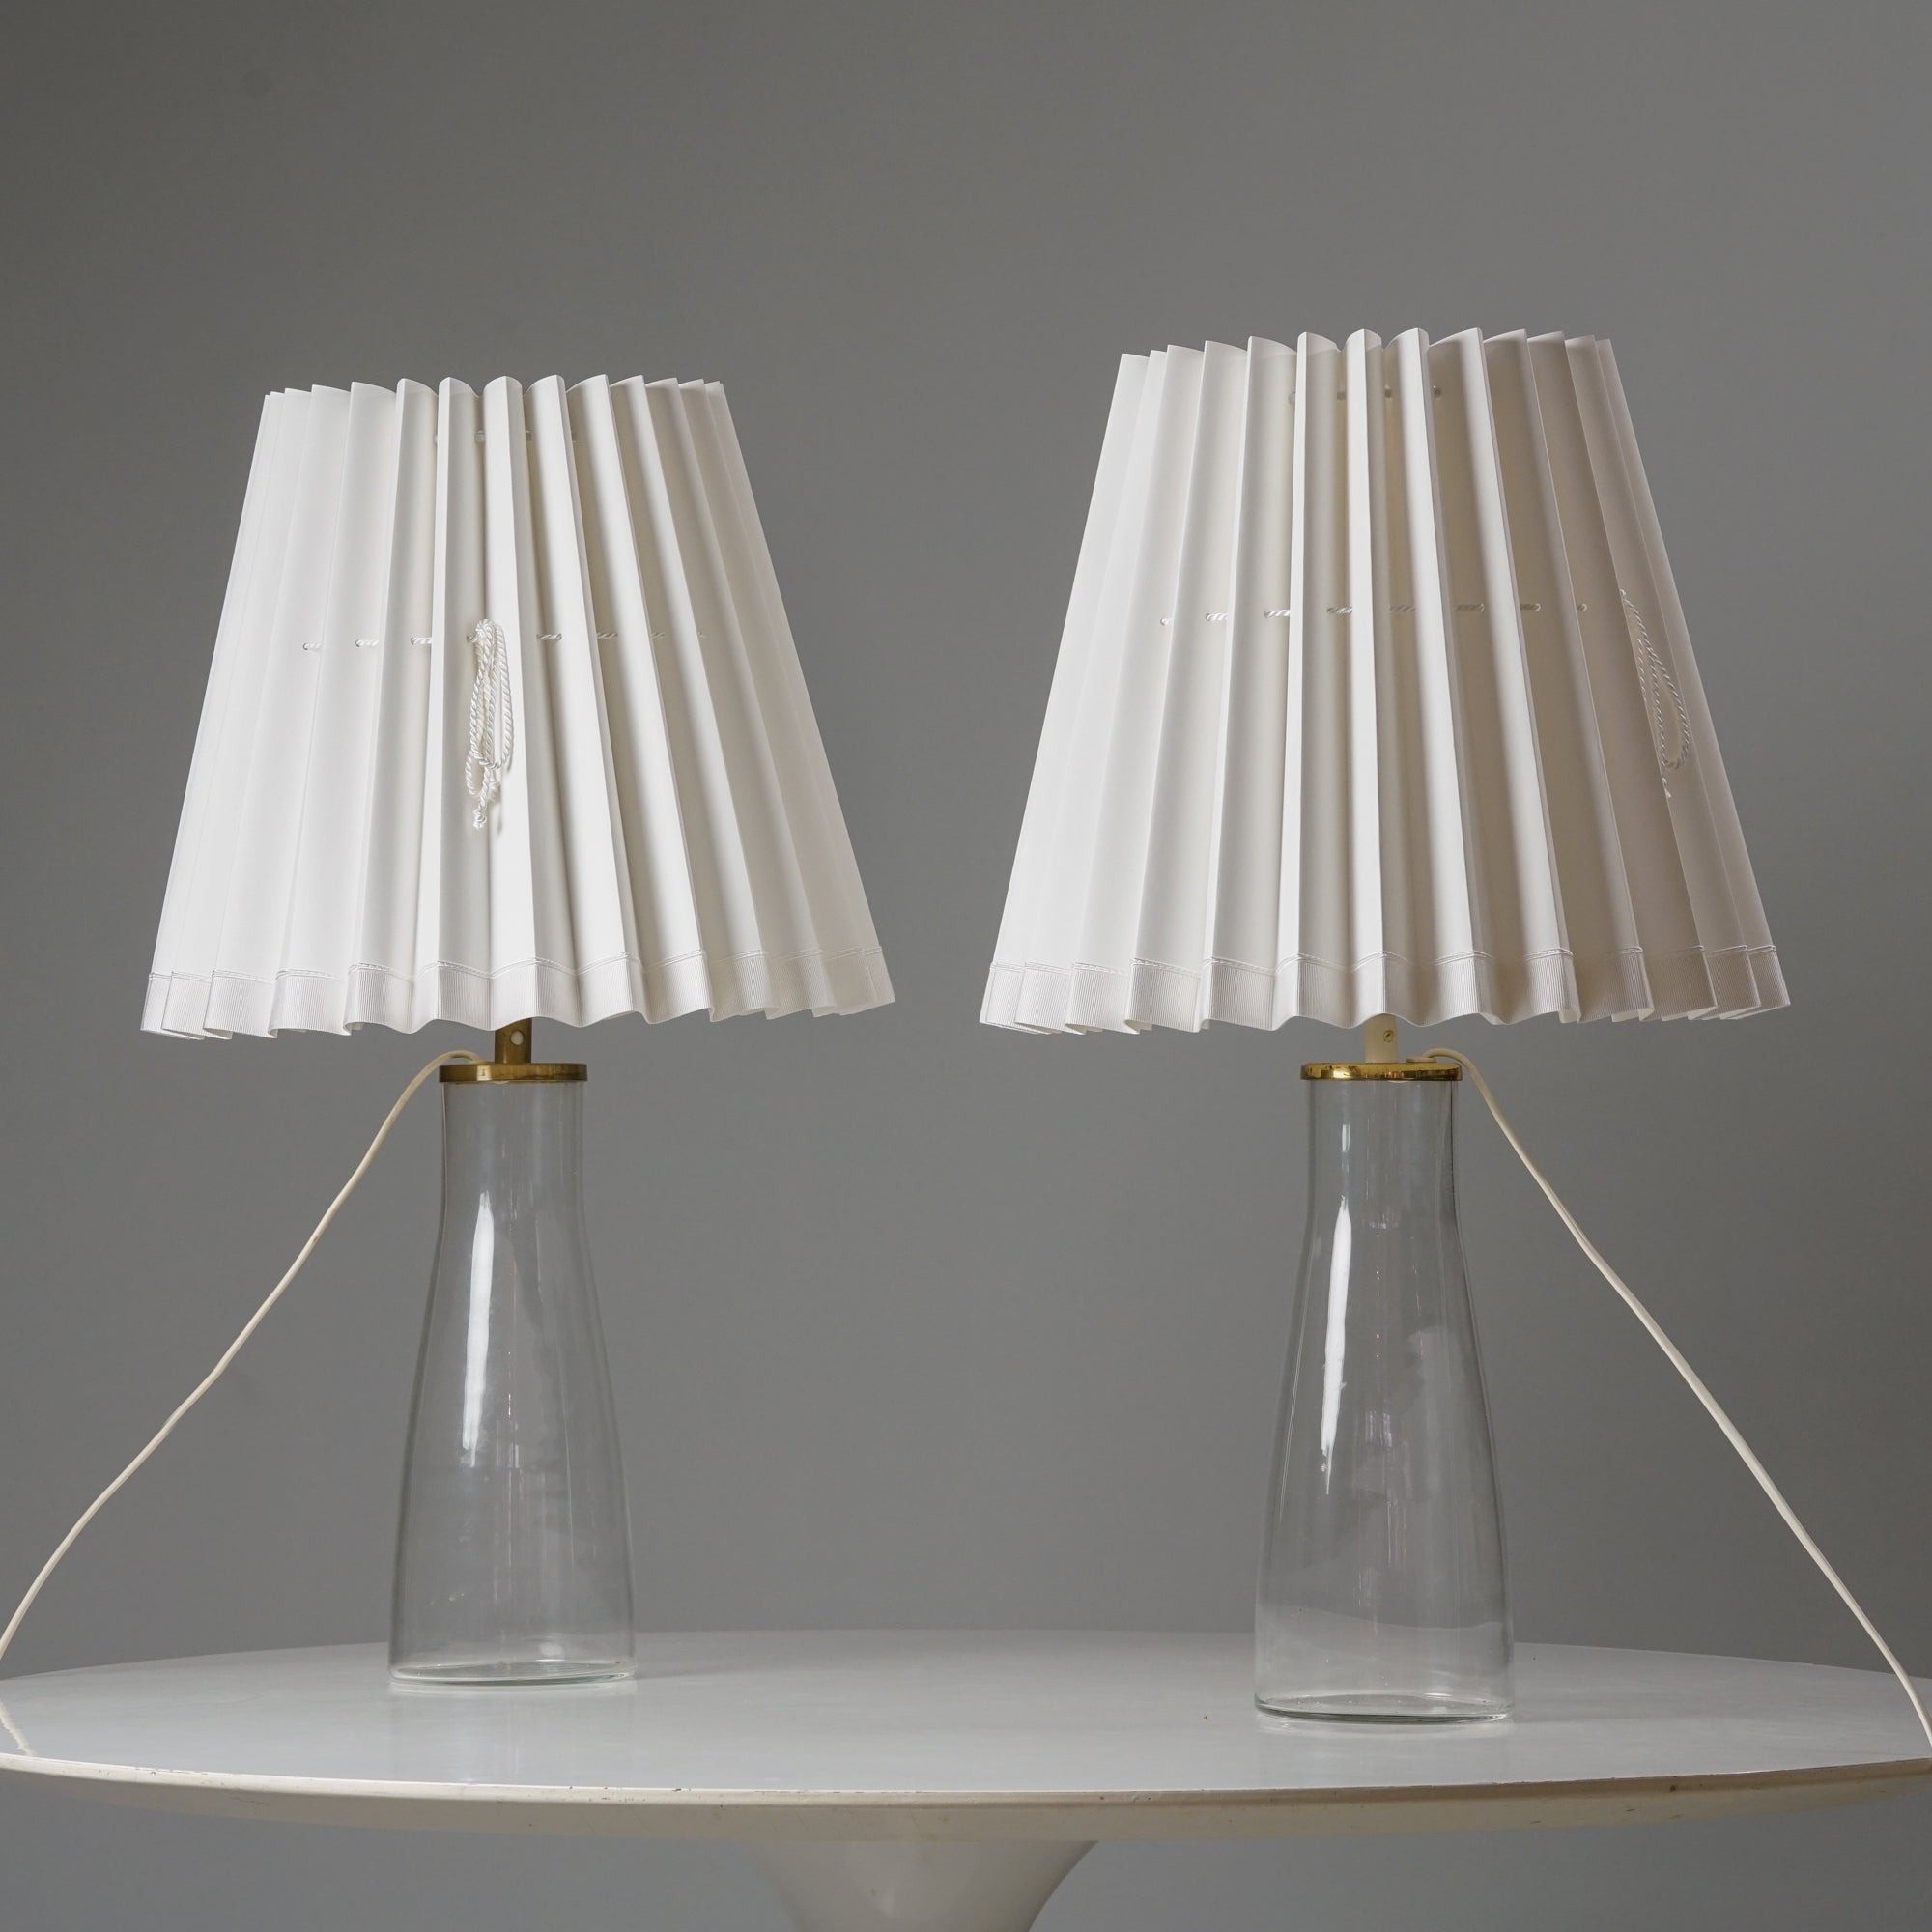 Kaksi samanlaista lamppua. Lampuissa on valkoiset laskostetut varjostimet ja läpinäkyvät lasiset jalat messinkikoristelulla. 